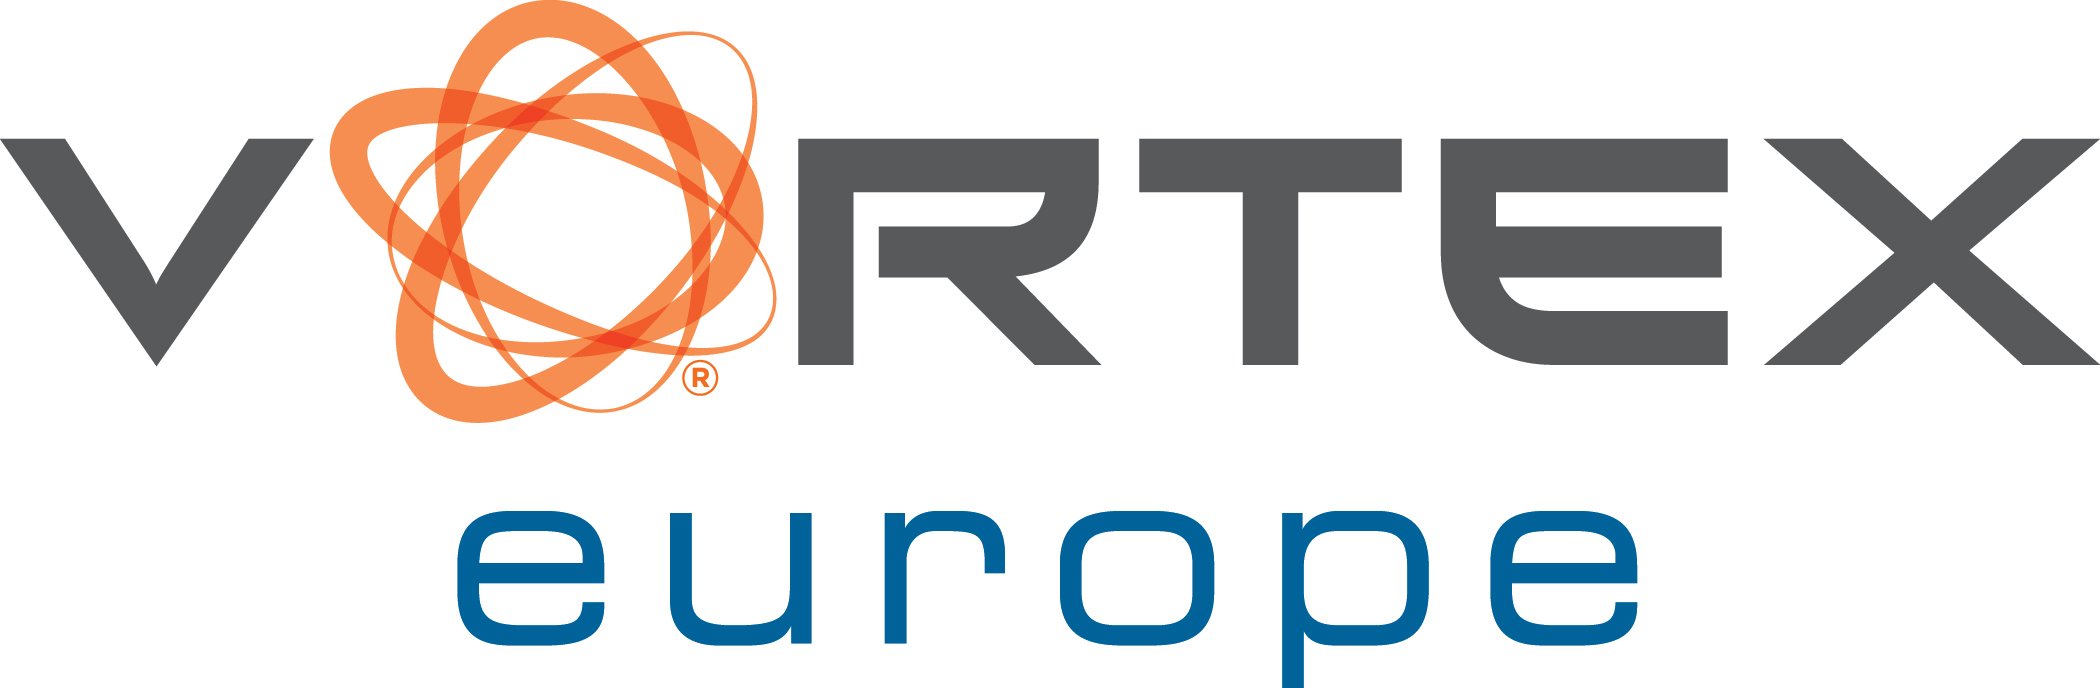 Vortex Europe GmbH